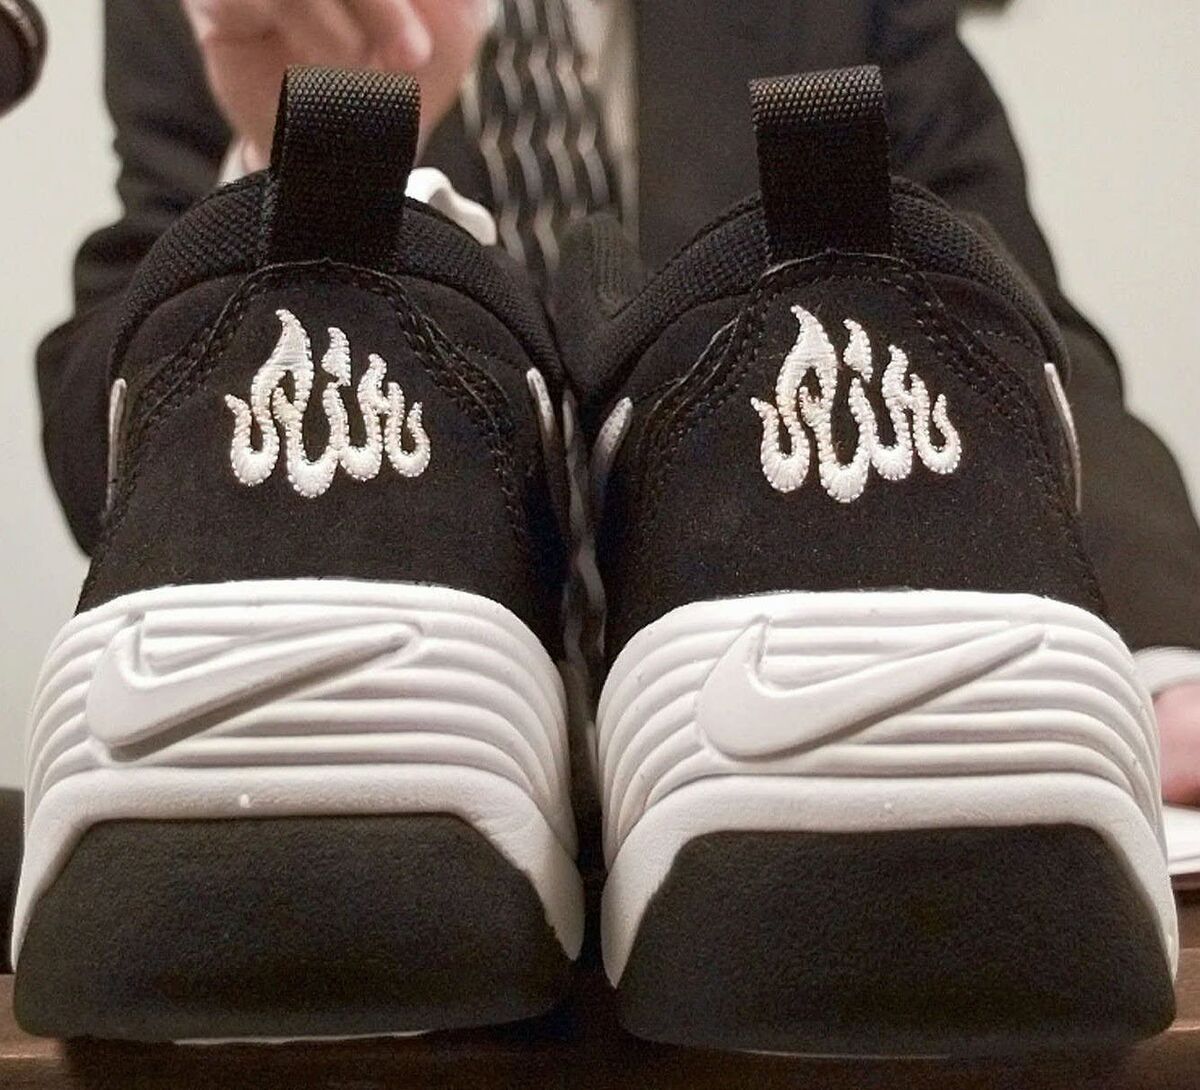 Мусульманская обувь. Nike 1997. Nike Air bakin Allah. Кроссовки с иероглифом. Кроссовки для мусульман.